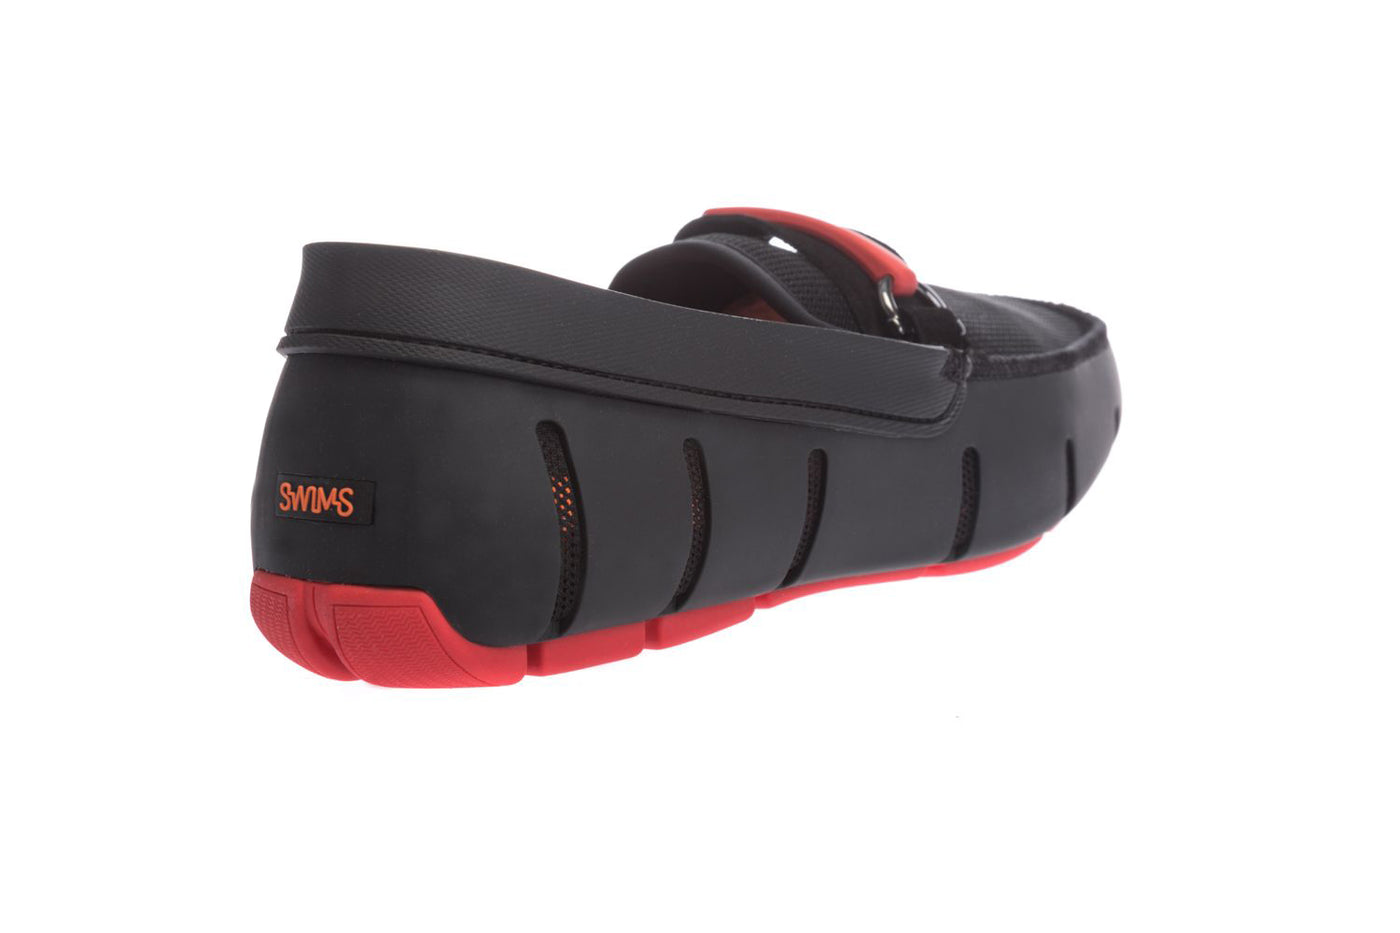 Swims The Sporty Bit Loafer Shoe in Black Heel